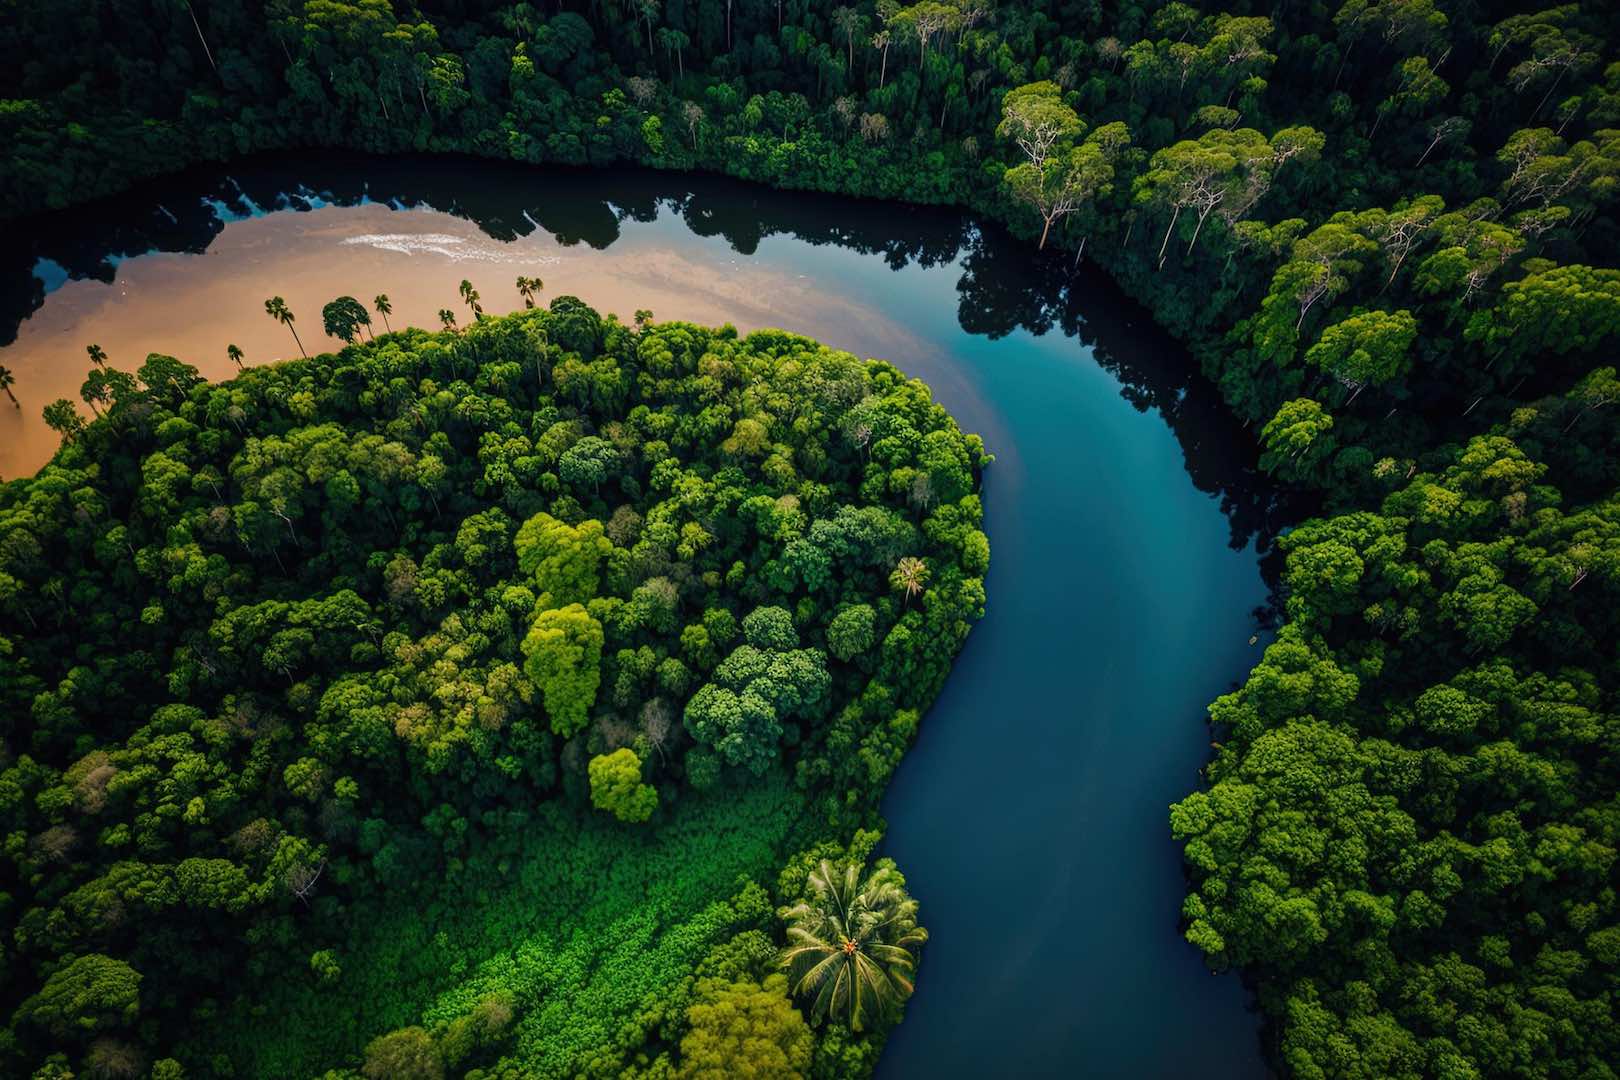 إطلاق برنامج بقيمة 1.1 مليار دولار للحفاظ على غابات الأمازون المطيرة